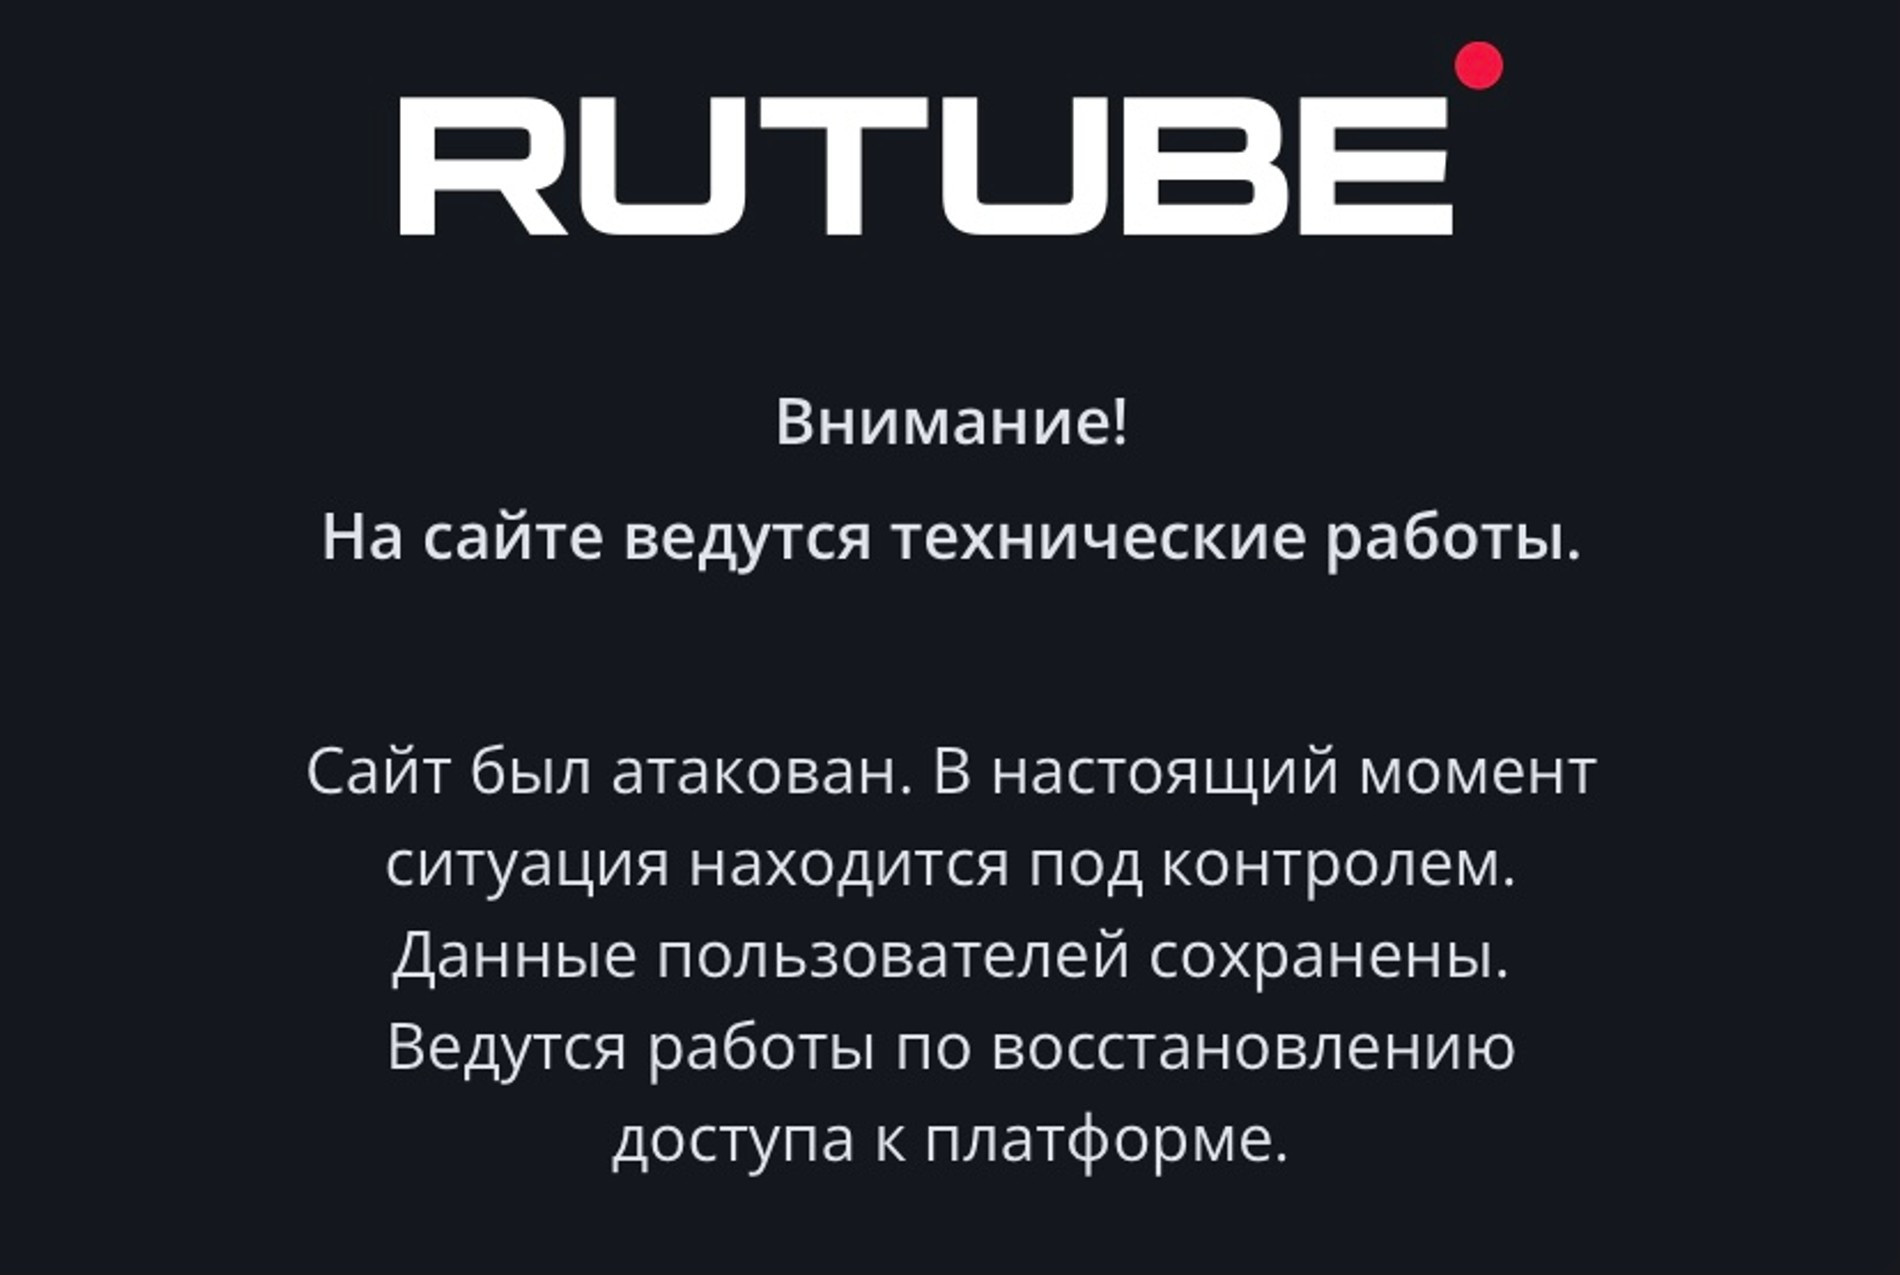 Стартовая страница Rutube с 9 по 11 мая 